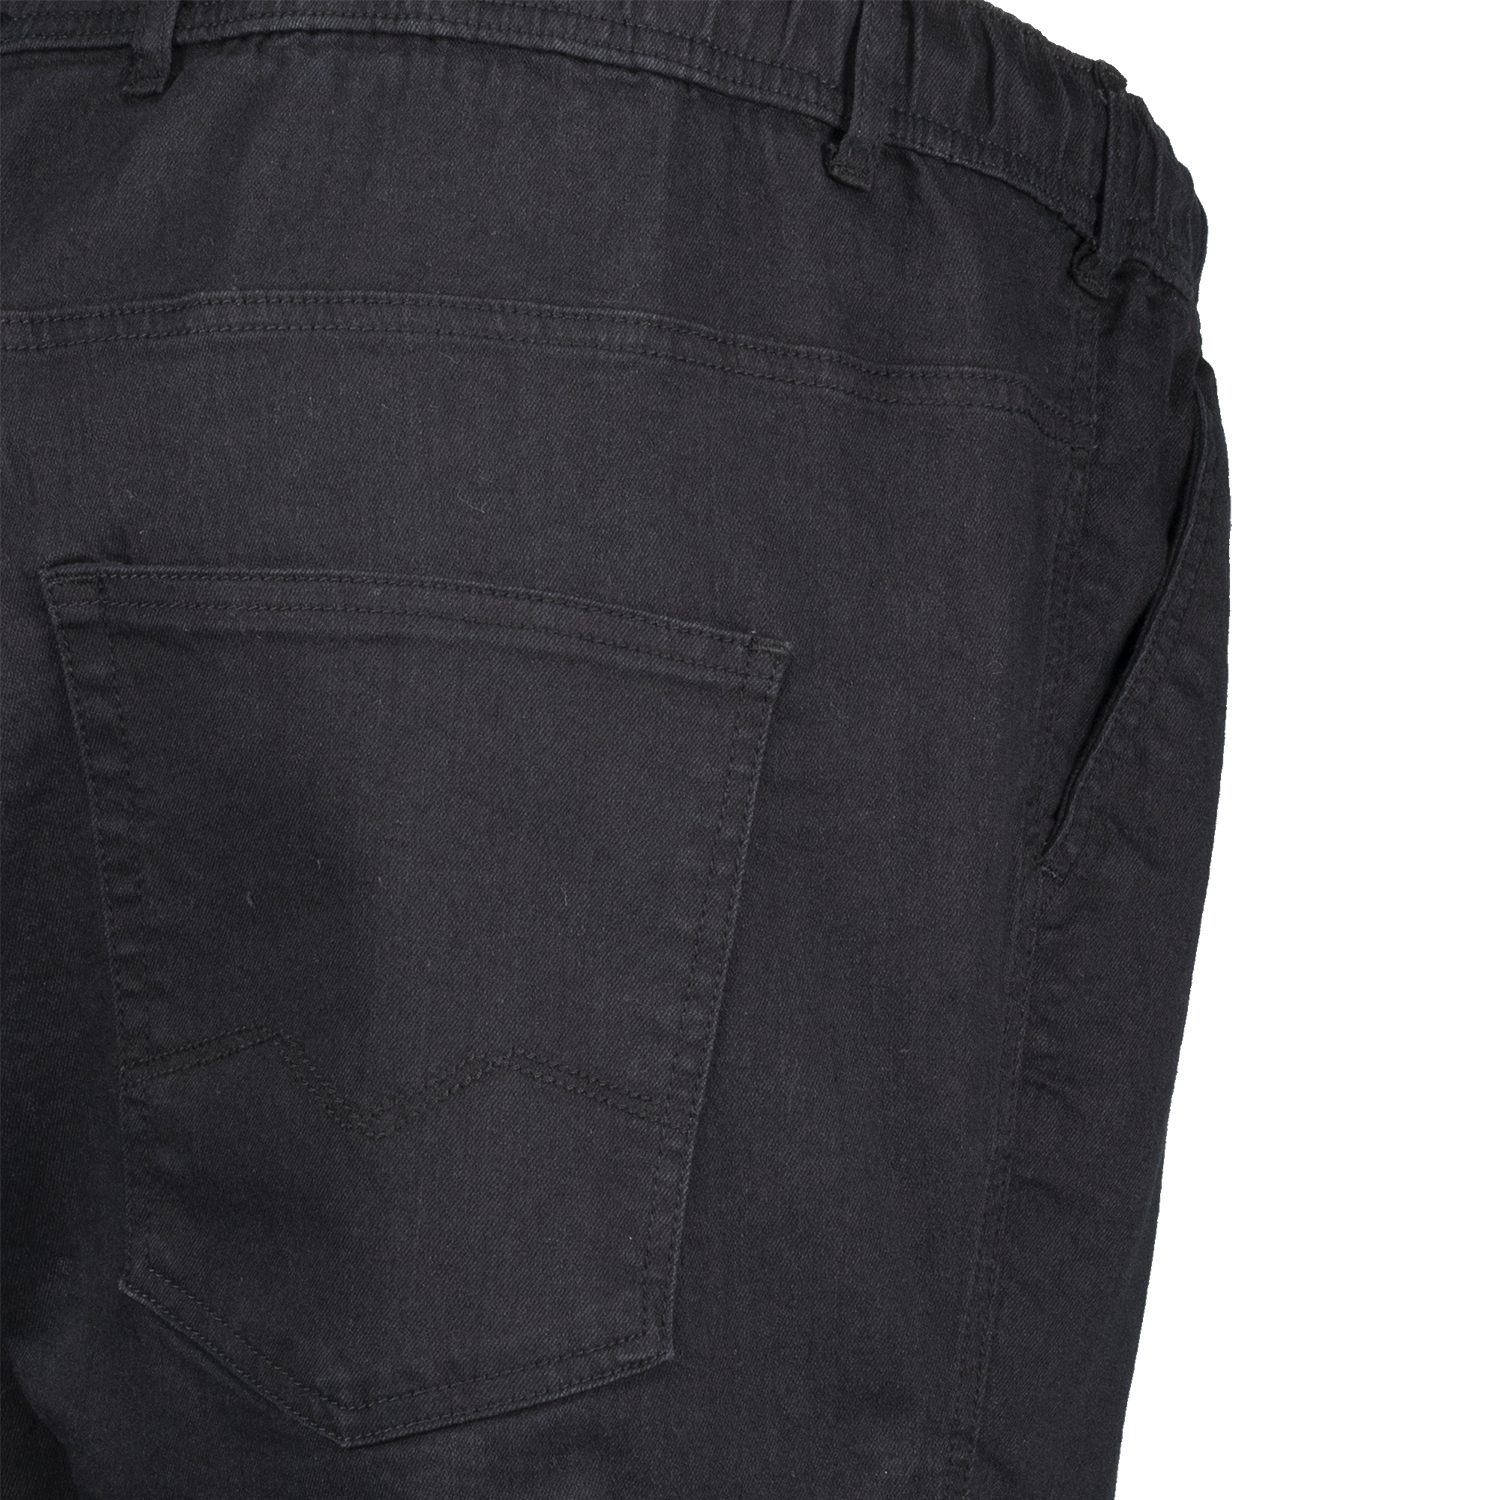 Herren Jeans Jogginghose kurz in großen Größen bis 12XL von Adamo Serie KANSAS schwarz